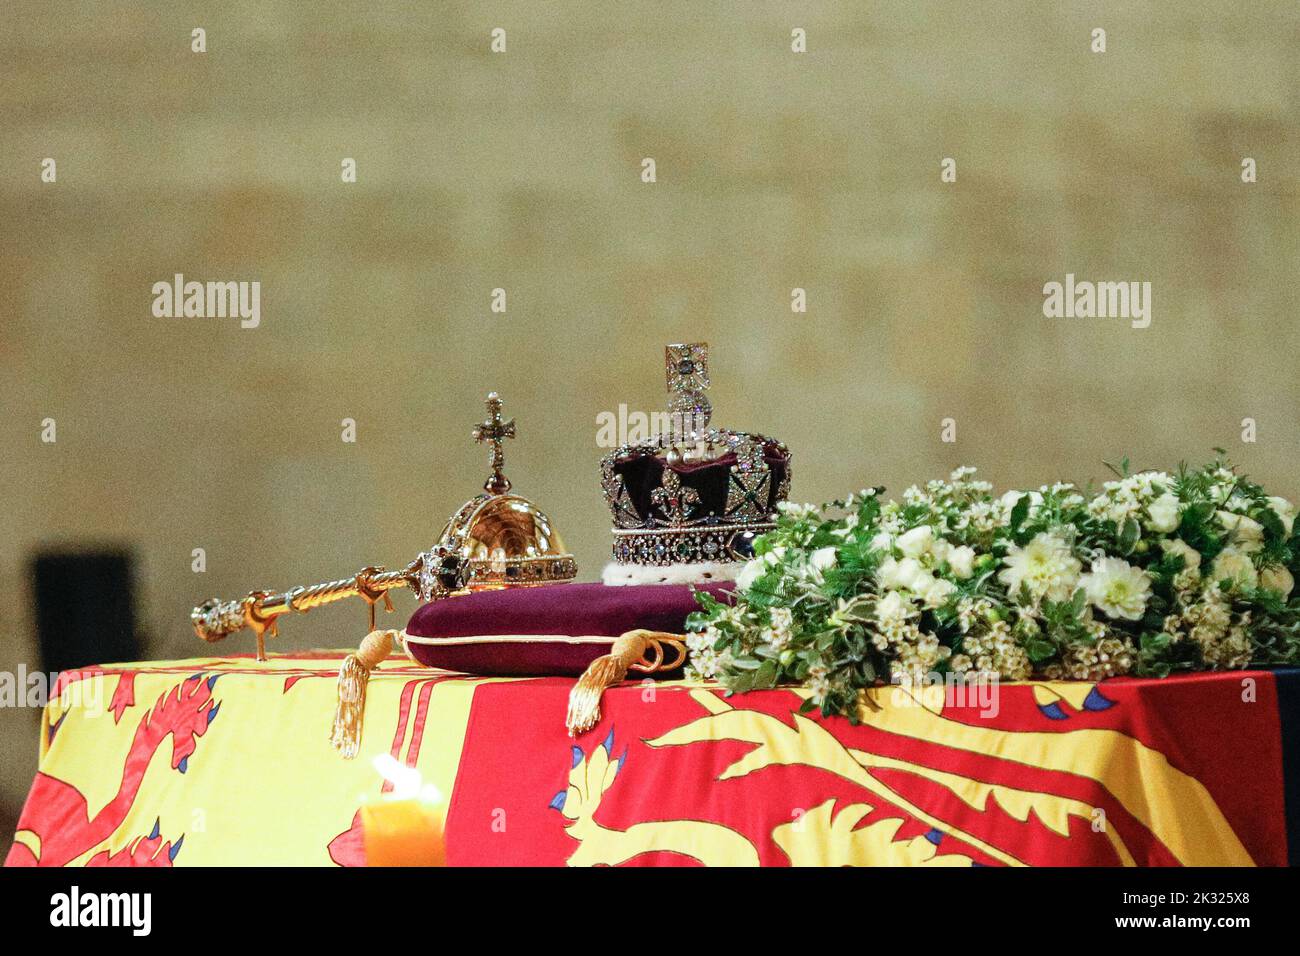 La couronne et la vérité sur le cercueil de la reine Elizabeth II pendant la période de mensonge dans l'état à Westminster Hall, Londres, Angleterre, Royaume-Uni Banque D'Images